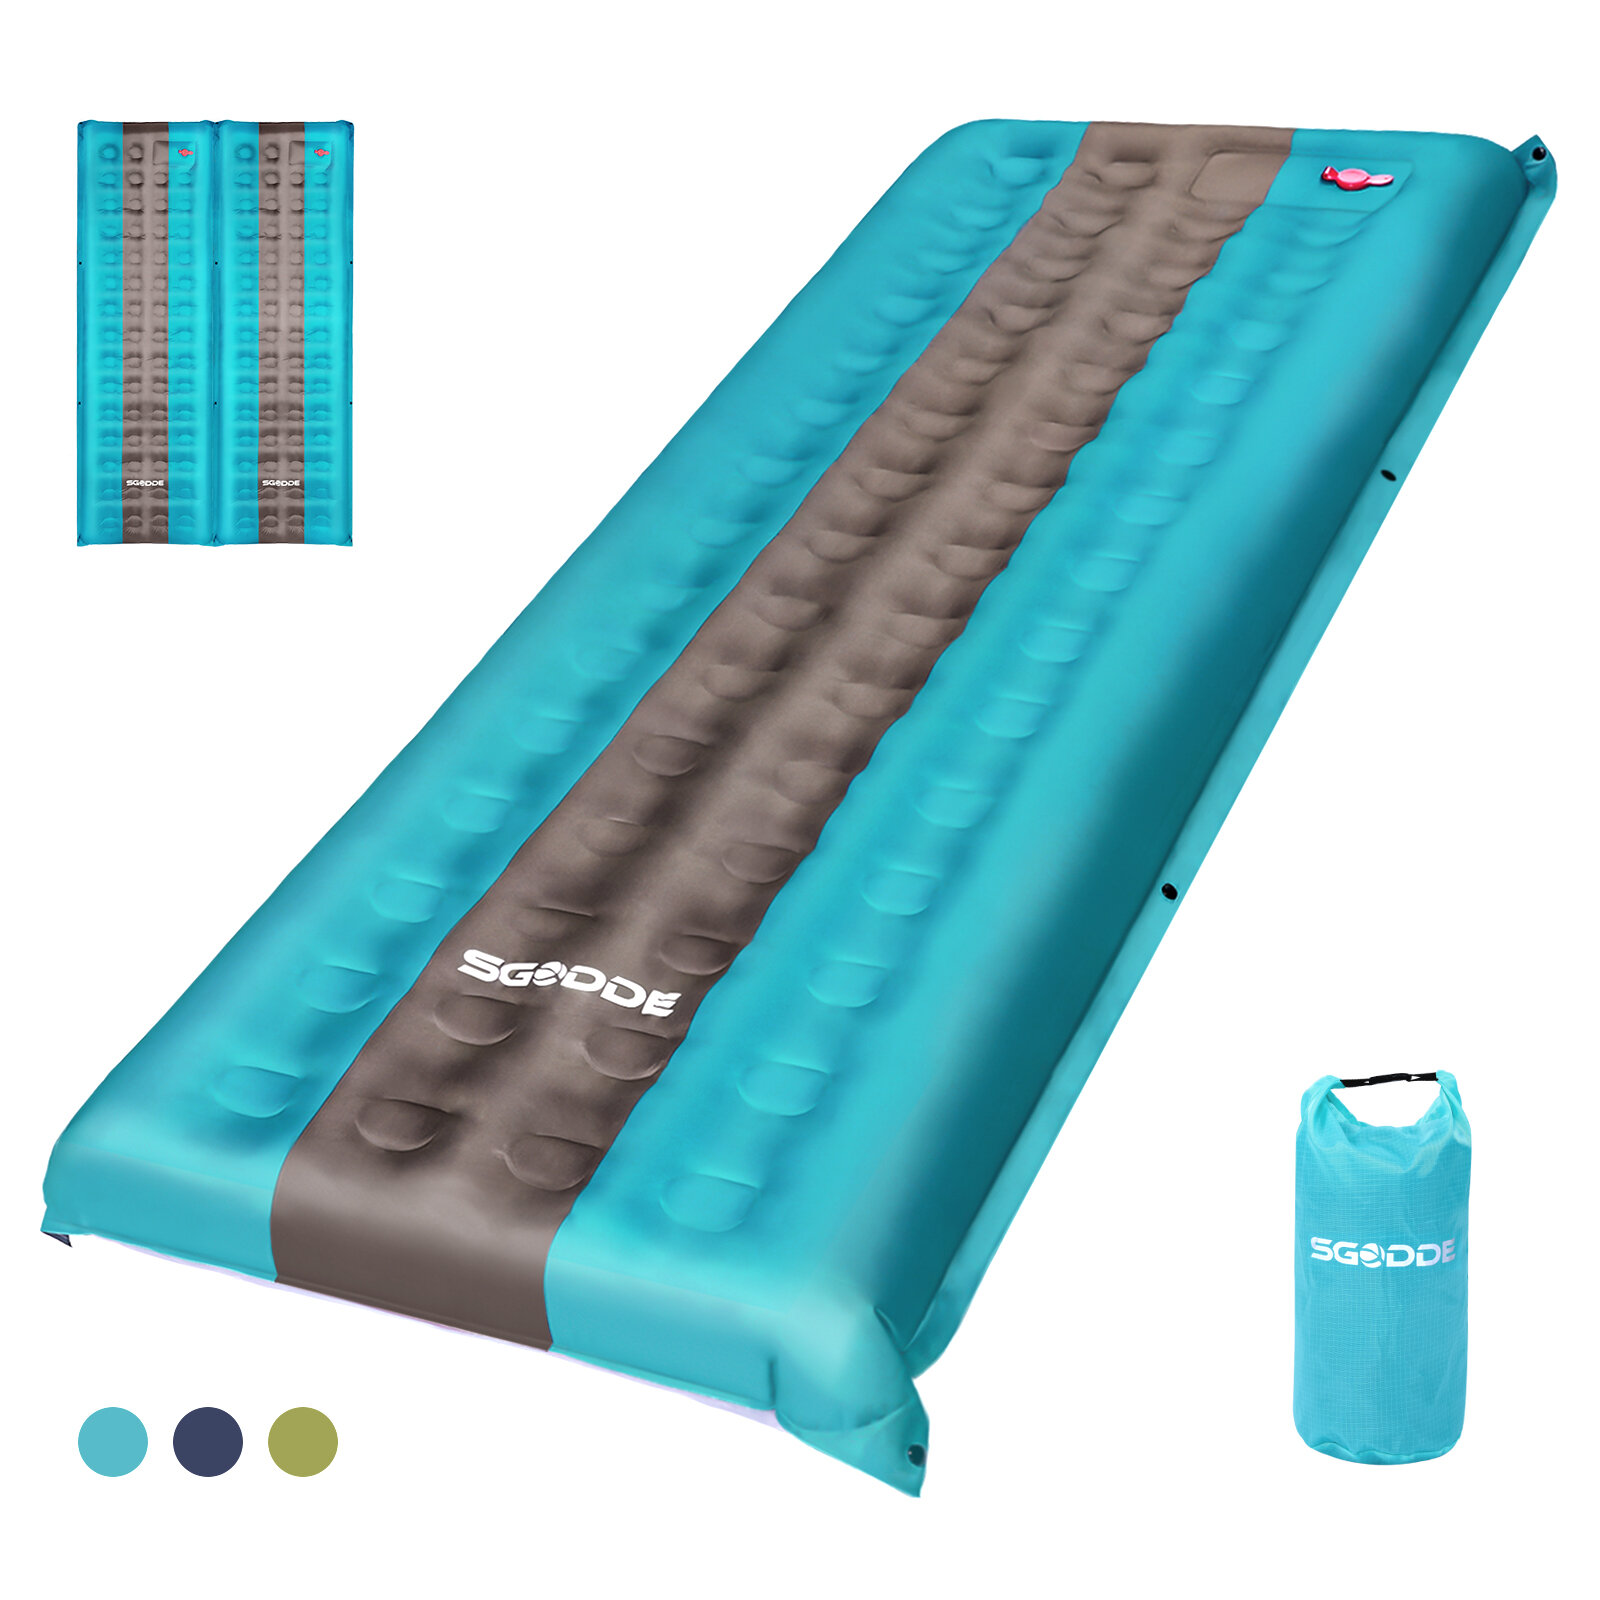 SGODDE 80D Spliceable Ultra Lightweight Sleeping Pad Portable Inflatable Mat Waterproof Outdoor Camping Travel Sleeping Mat